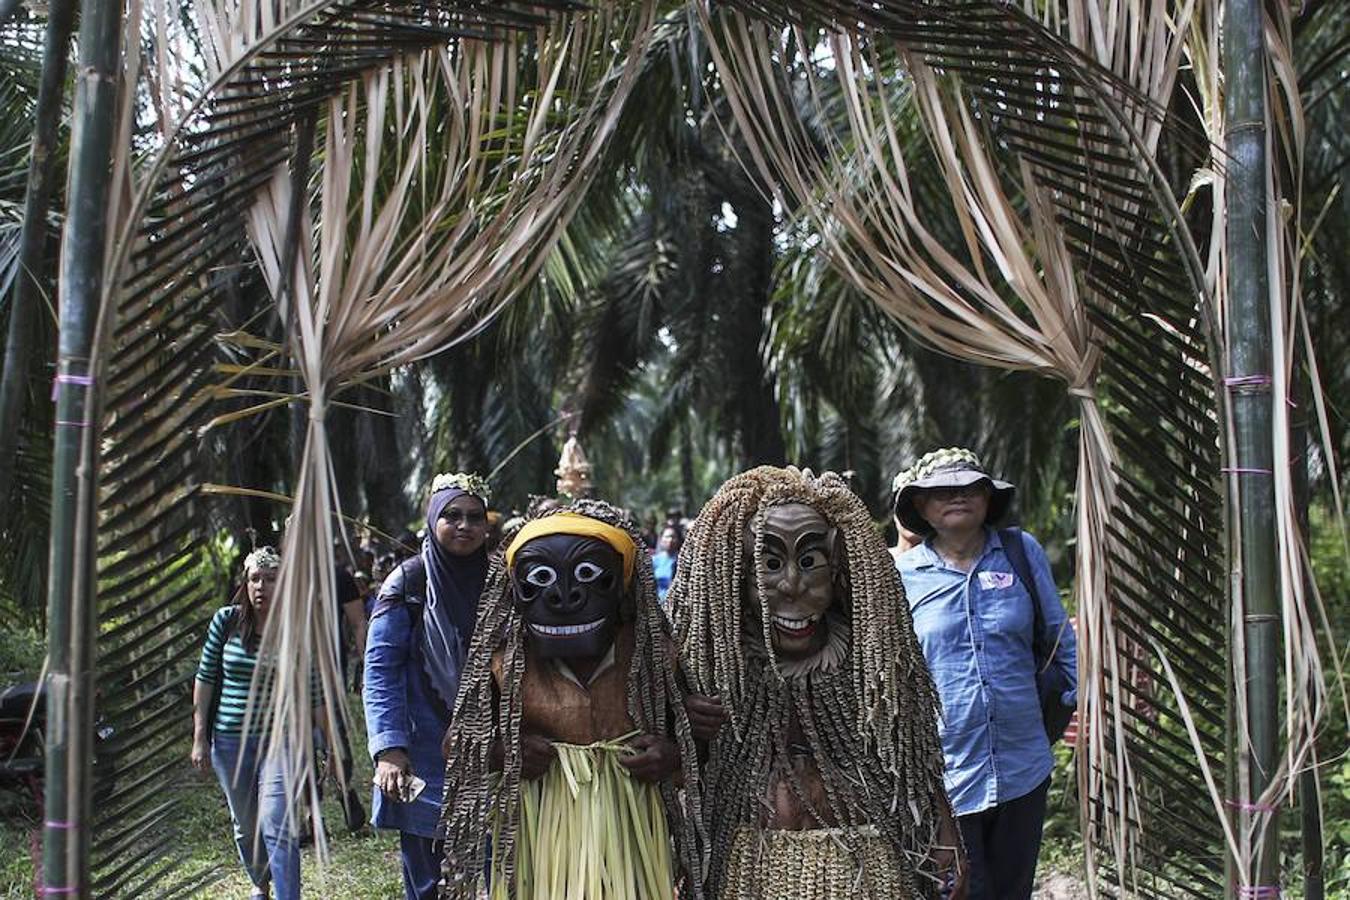 El pueblo de la tribu Mah Meri , Malasia, celebra el festival Ari Muyang o Día del Ancestro. Para la ocasión los miembros de la tribu utilizan máscaras para realizar el tradicional baile 'Main Jooh' y ofrecen oraciones y bendiciones en honor a sus antepasados.